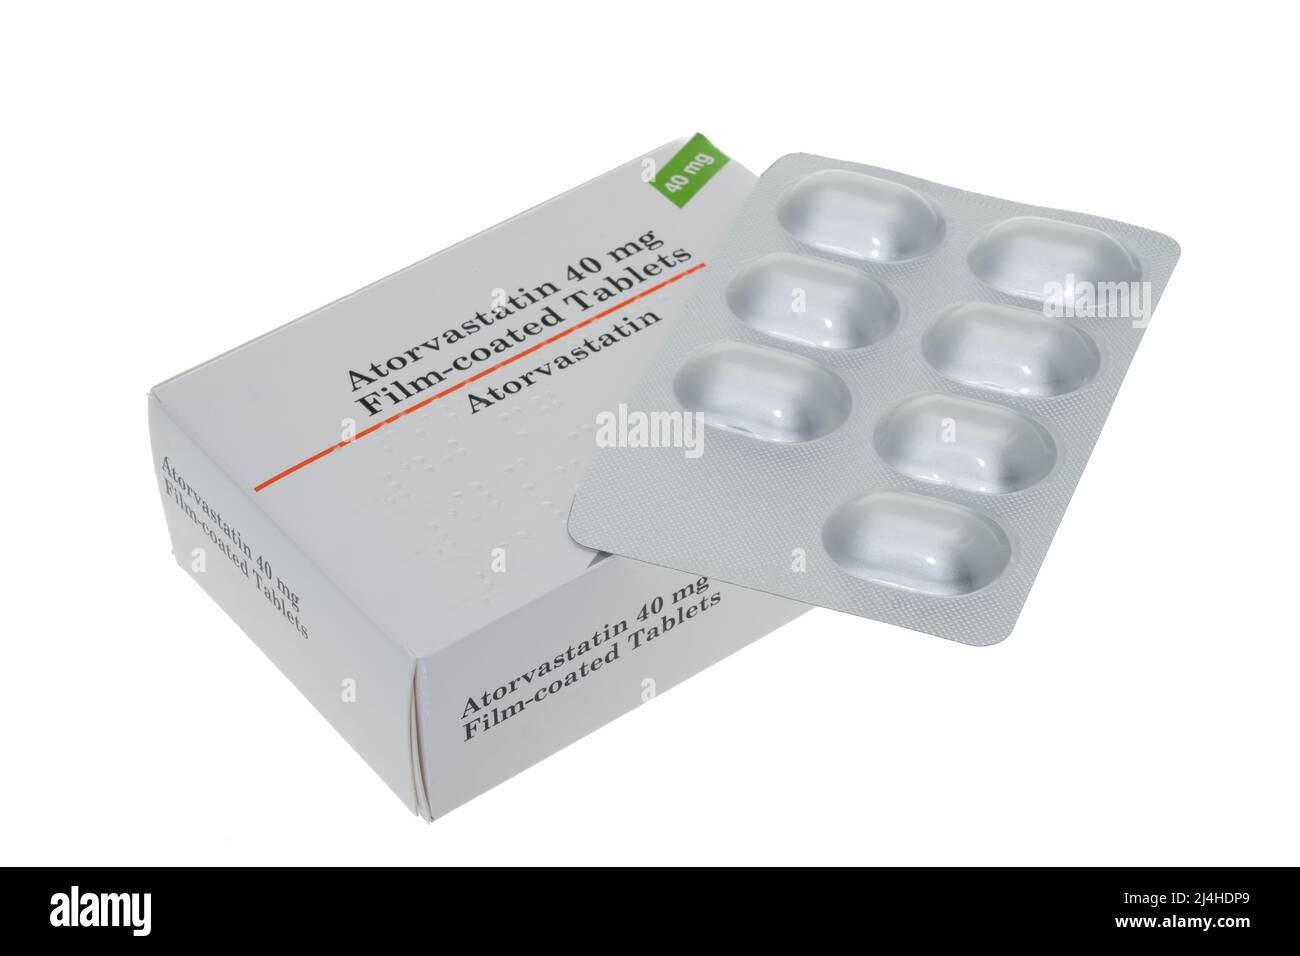 Una scatola generica e una confezione blister di Atorvastatin compresse - sfondo bianco. Atorvastatina è un membro della classe di farmaci nota come statine. Foto Stock